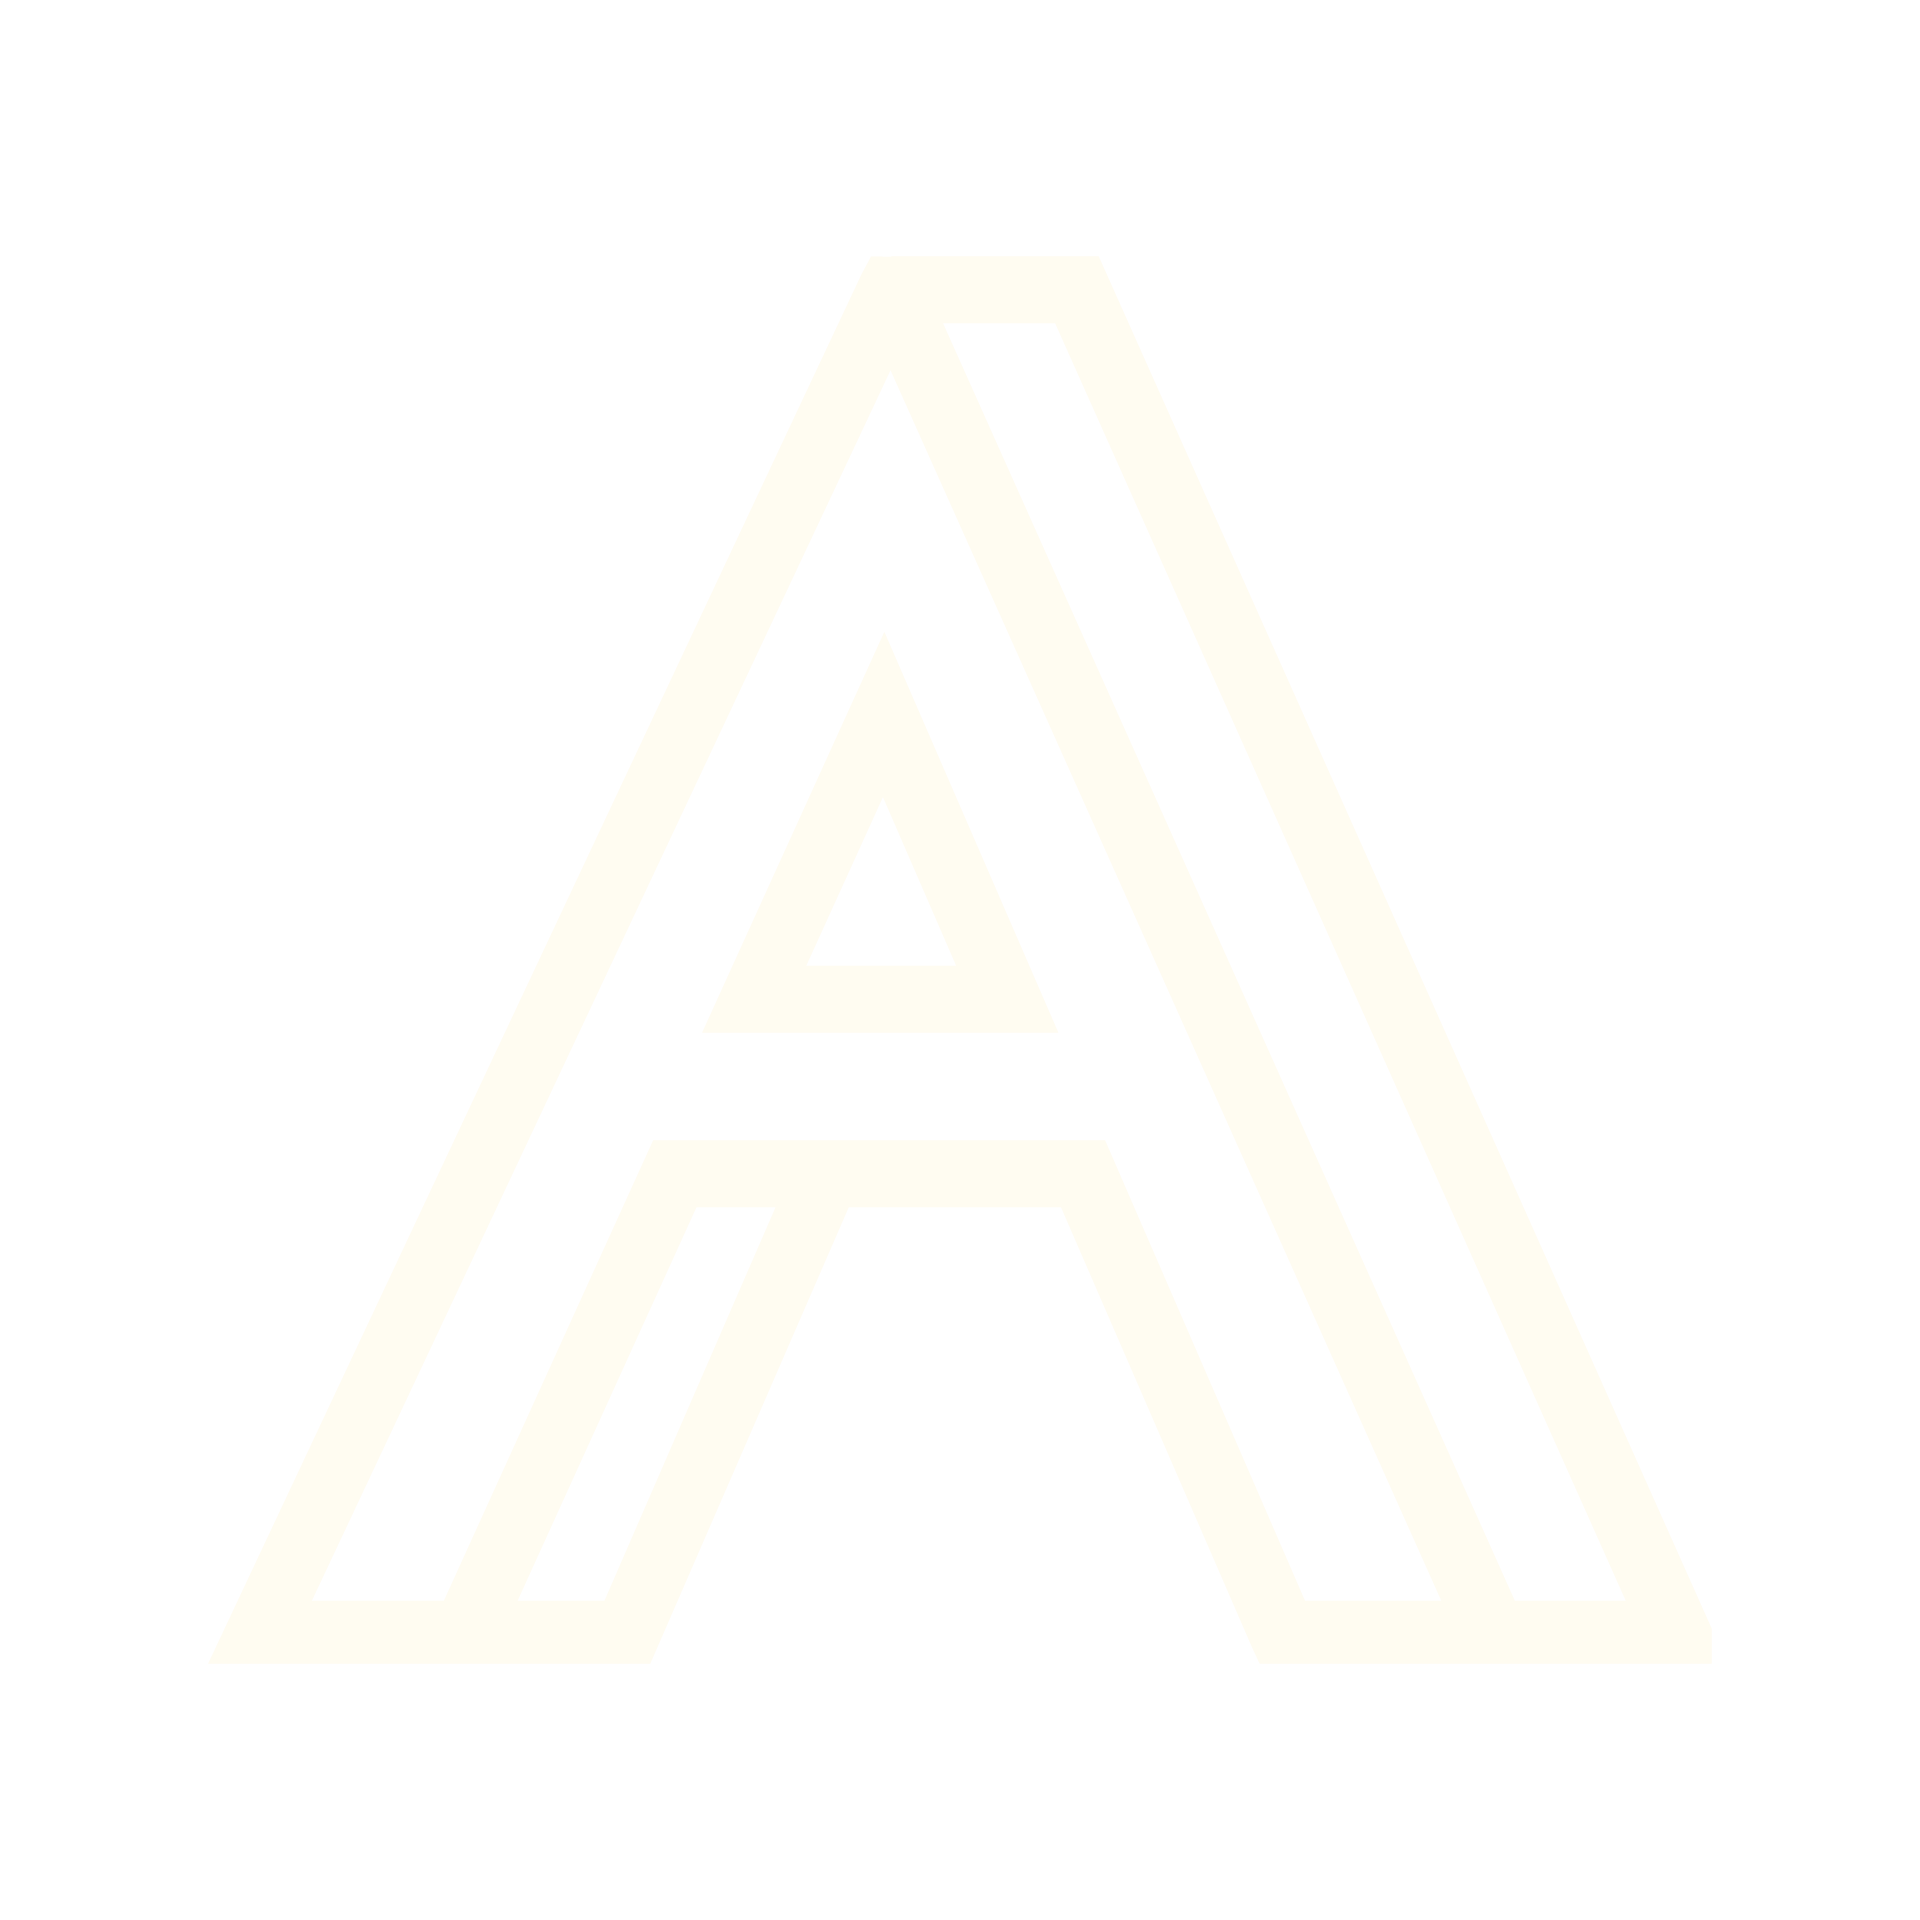 Bar André Logo